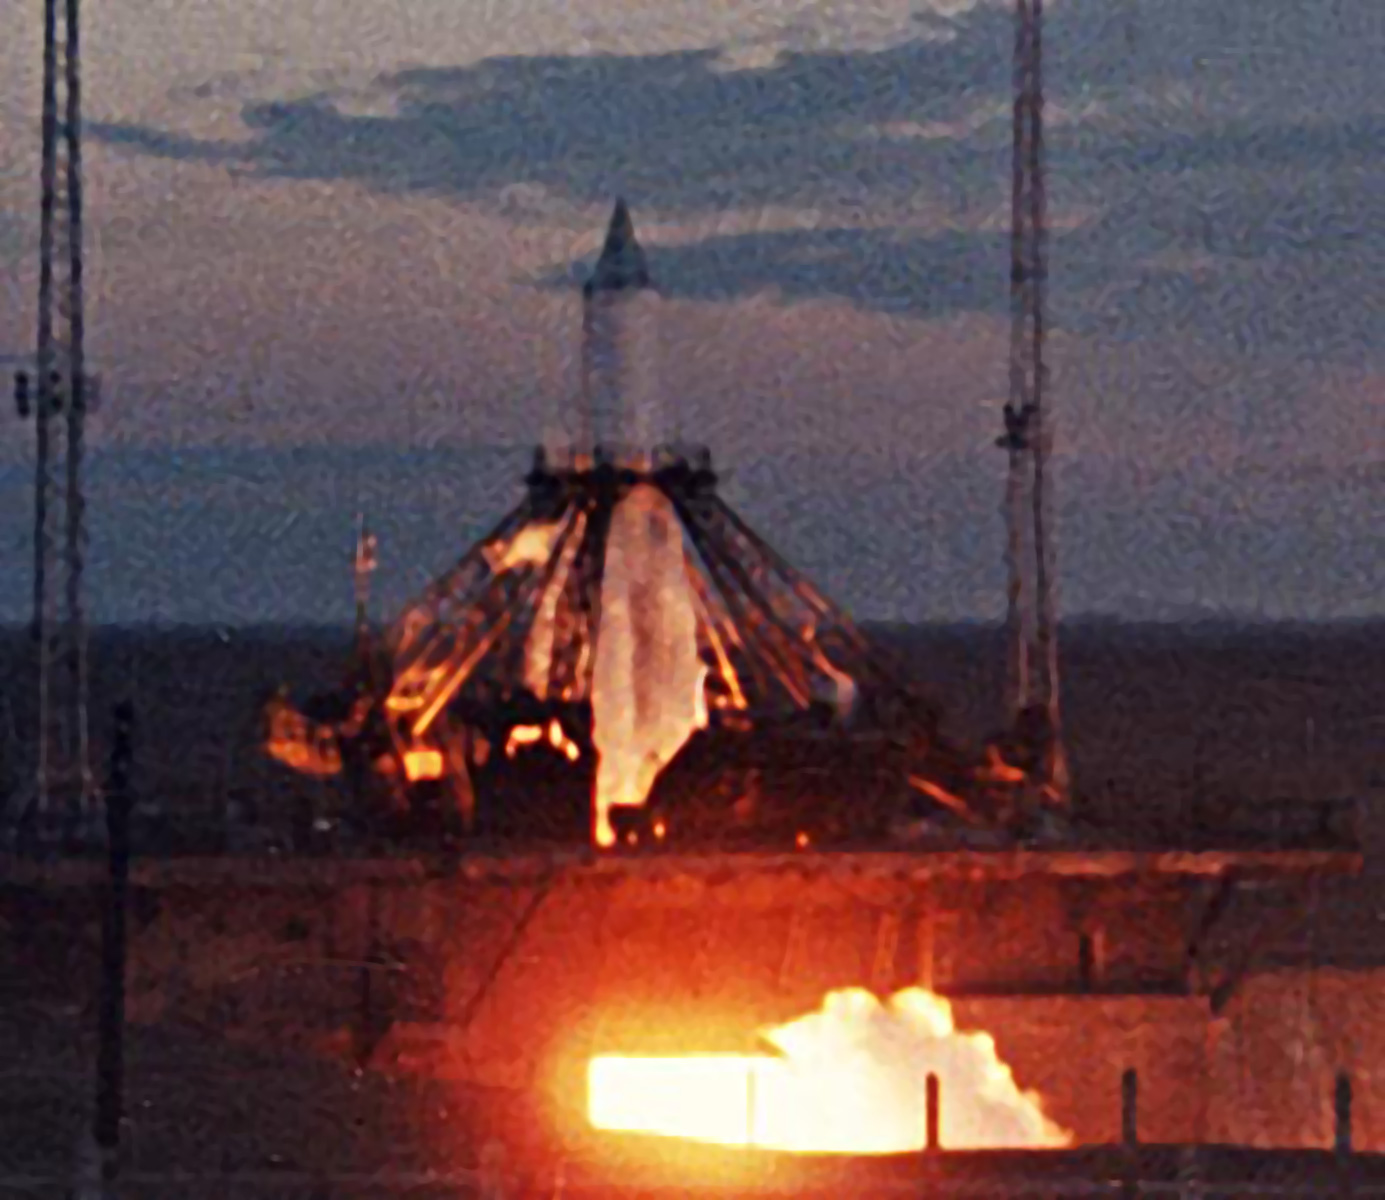 Launch of Sputnik 2 from the Baykonur Cosmodrome